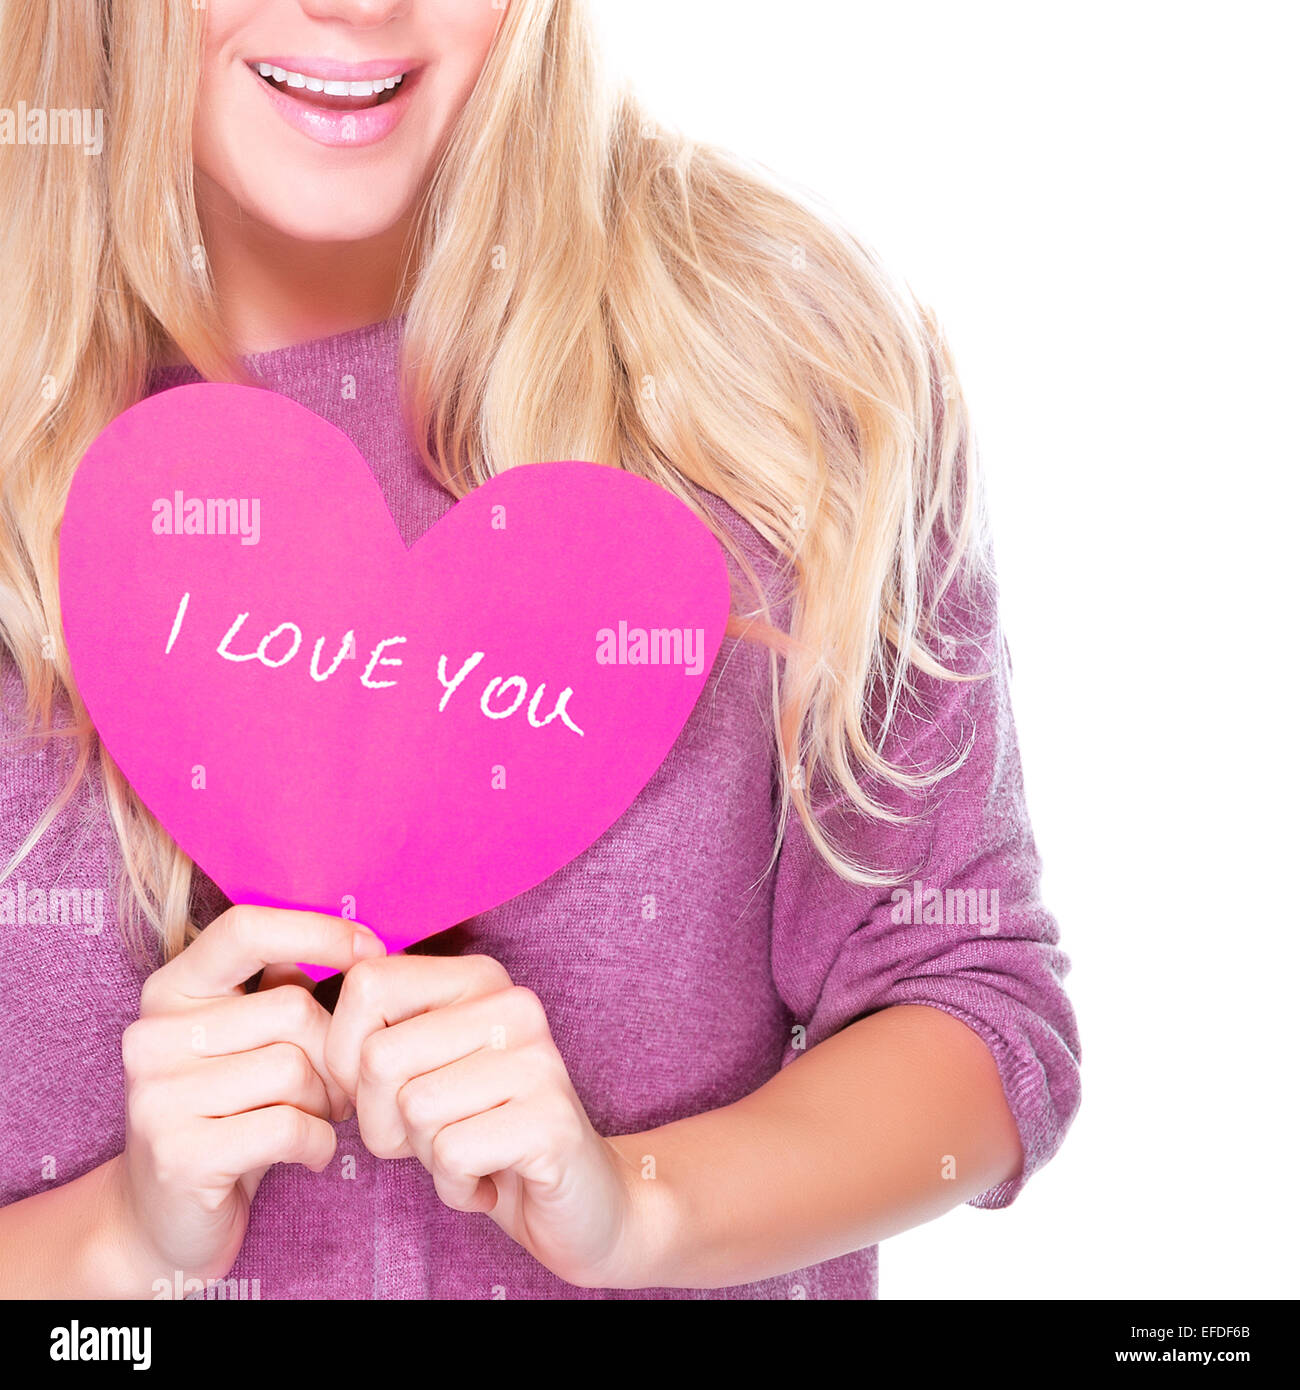 Happy girl holding en mains en forme de coeur rose carte de souhaits avec texte isolé sur fond blanc, je t'aime, visage Banque D'Images